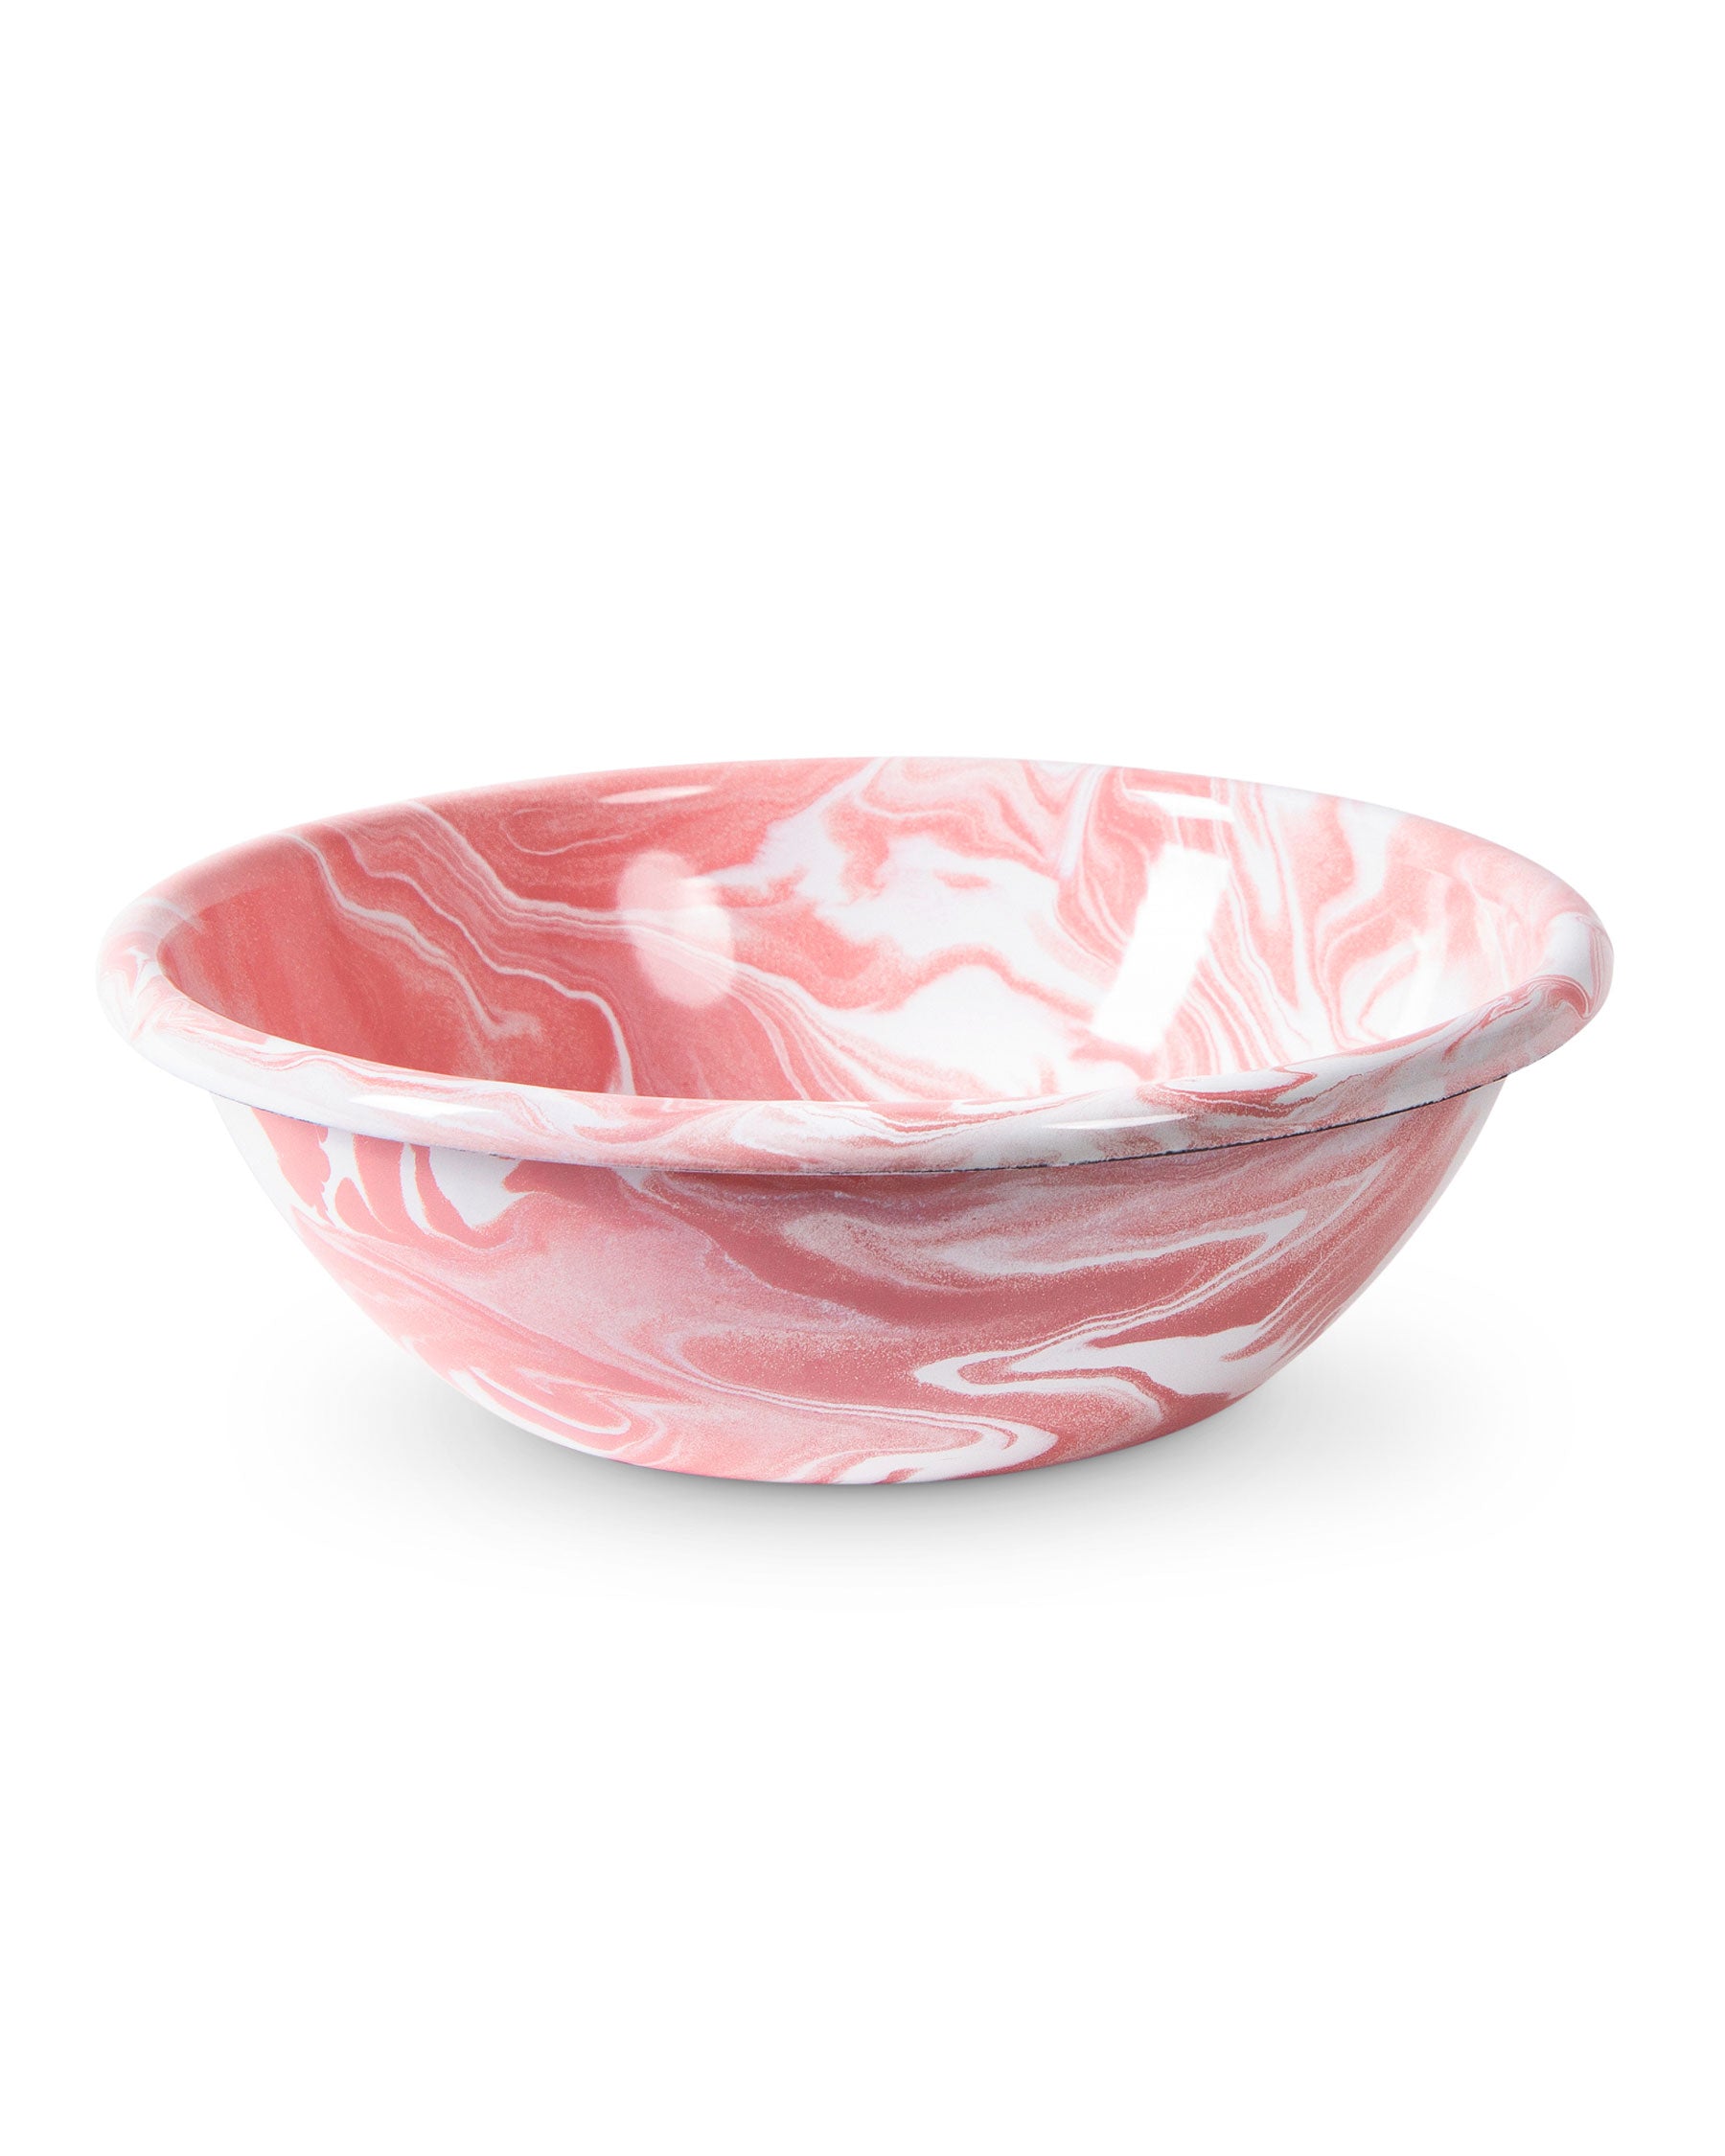 Pink Mixing Bowls + Mixing Bowl Sets